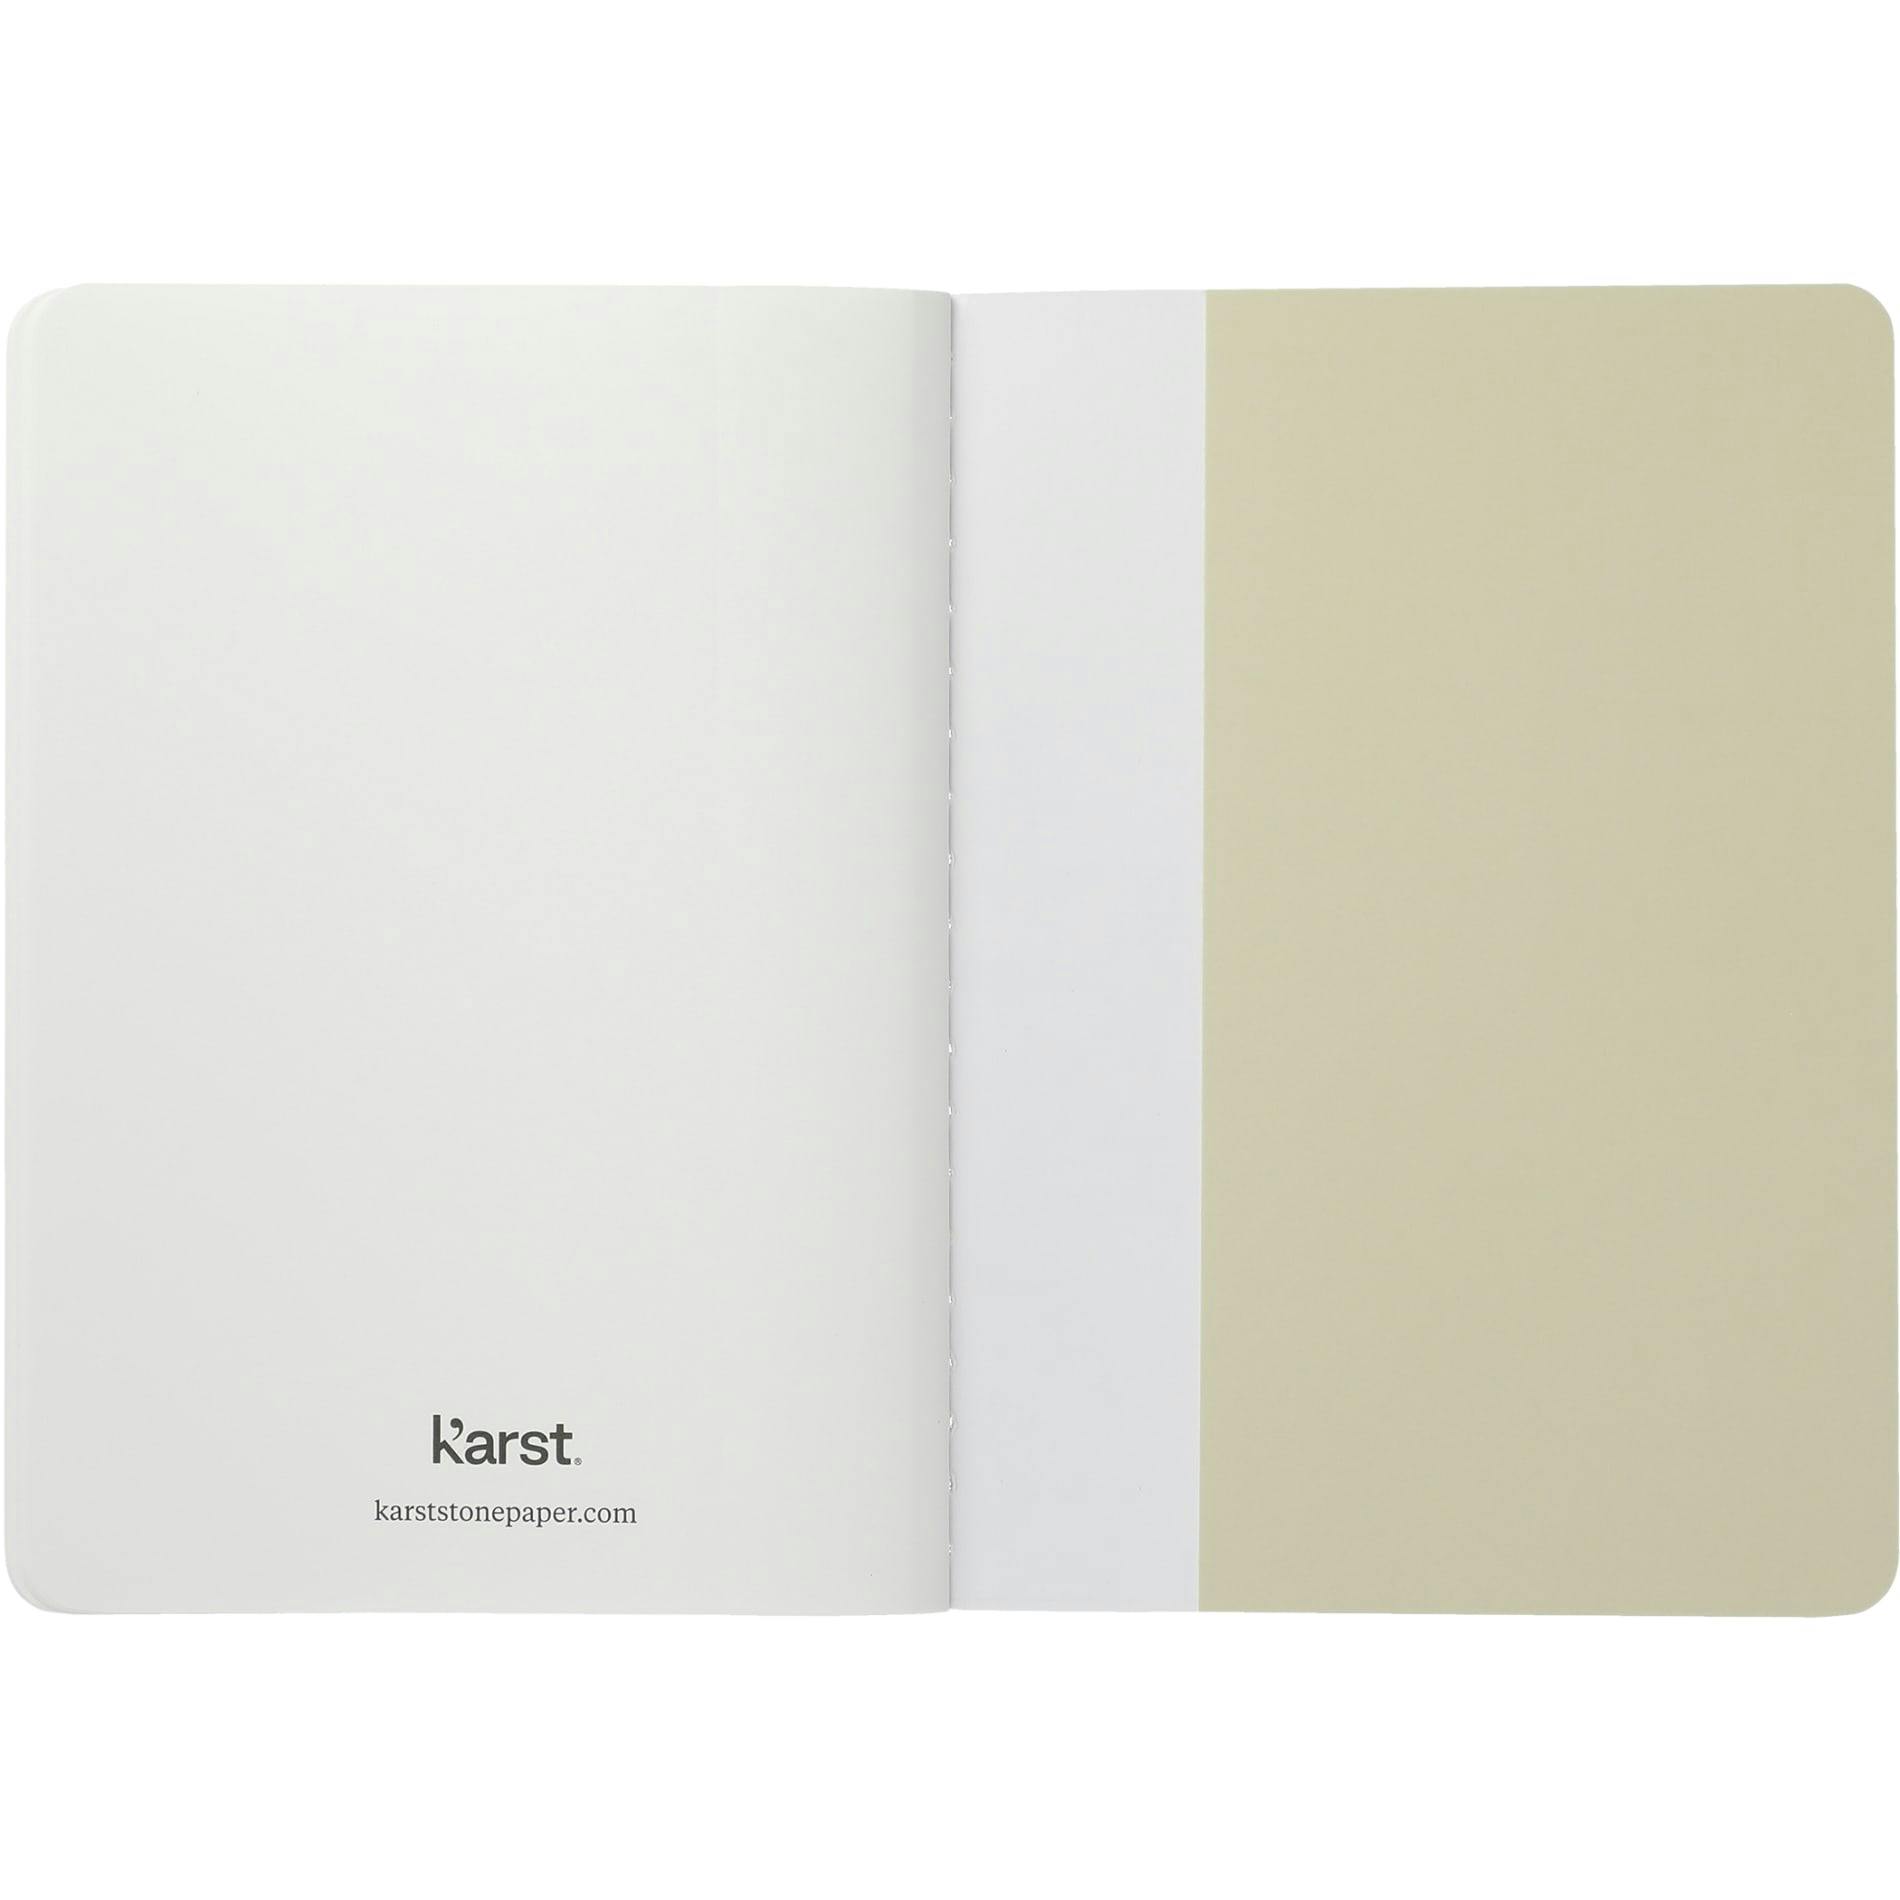 Karst Pocket Stone Paper Notebook - additional Image 3